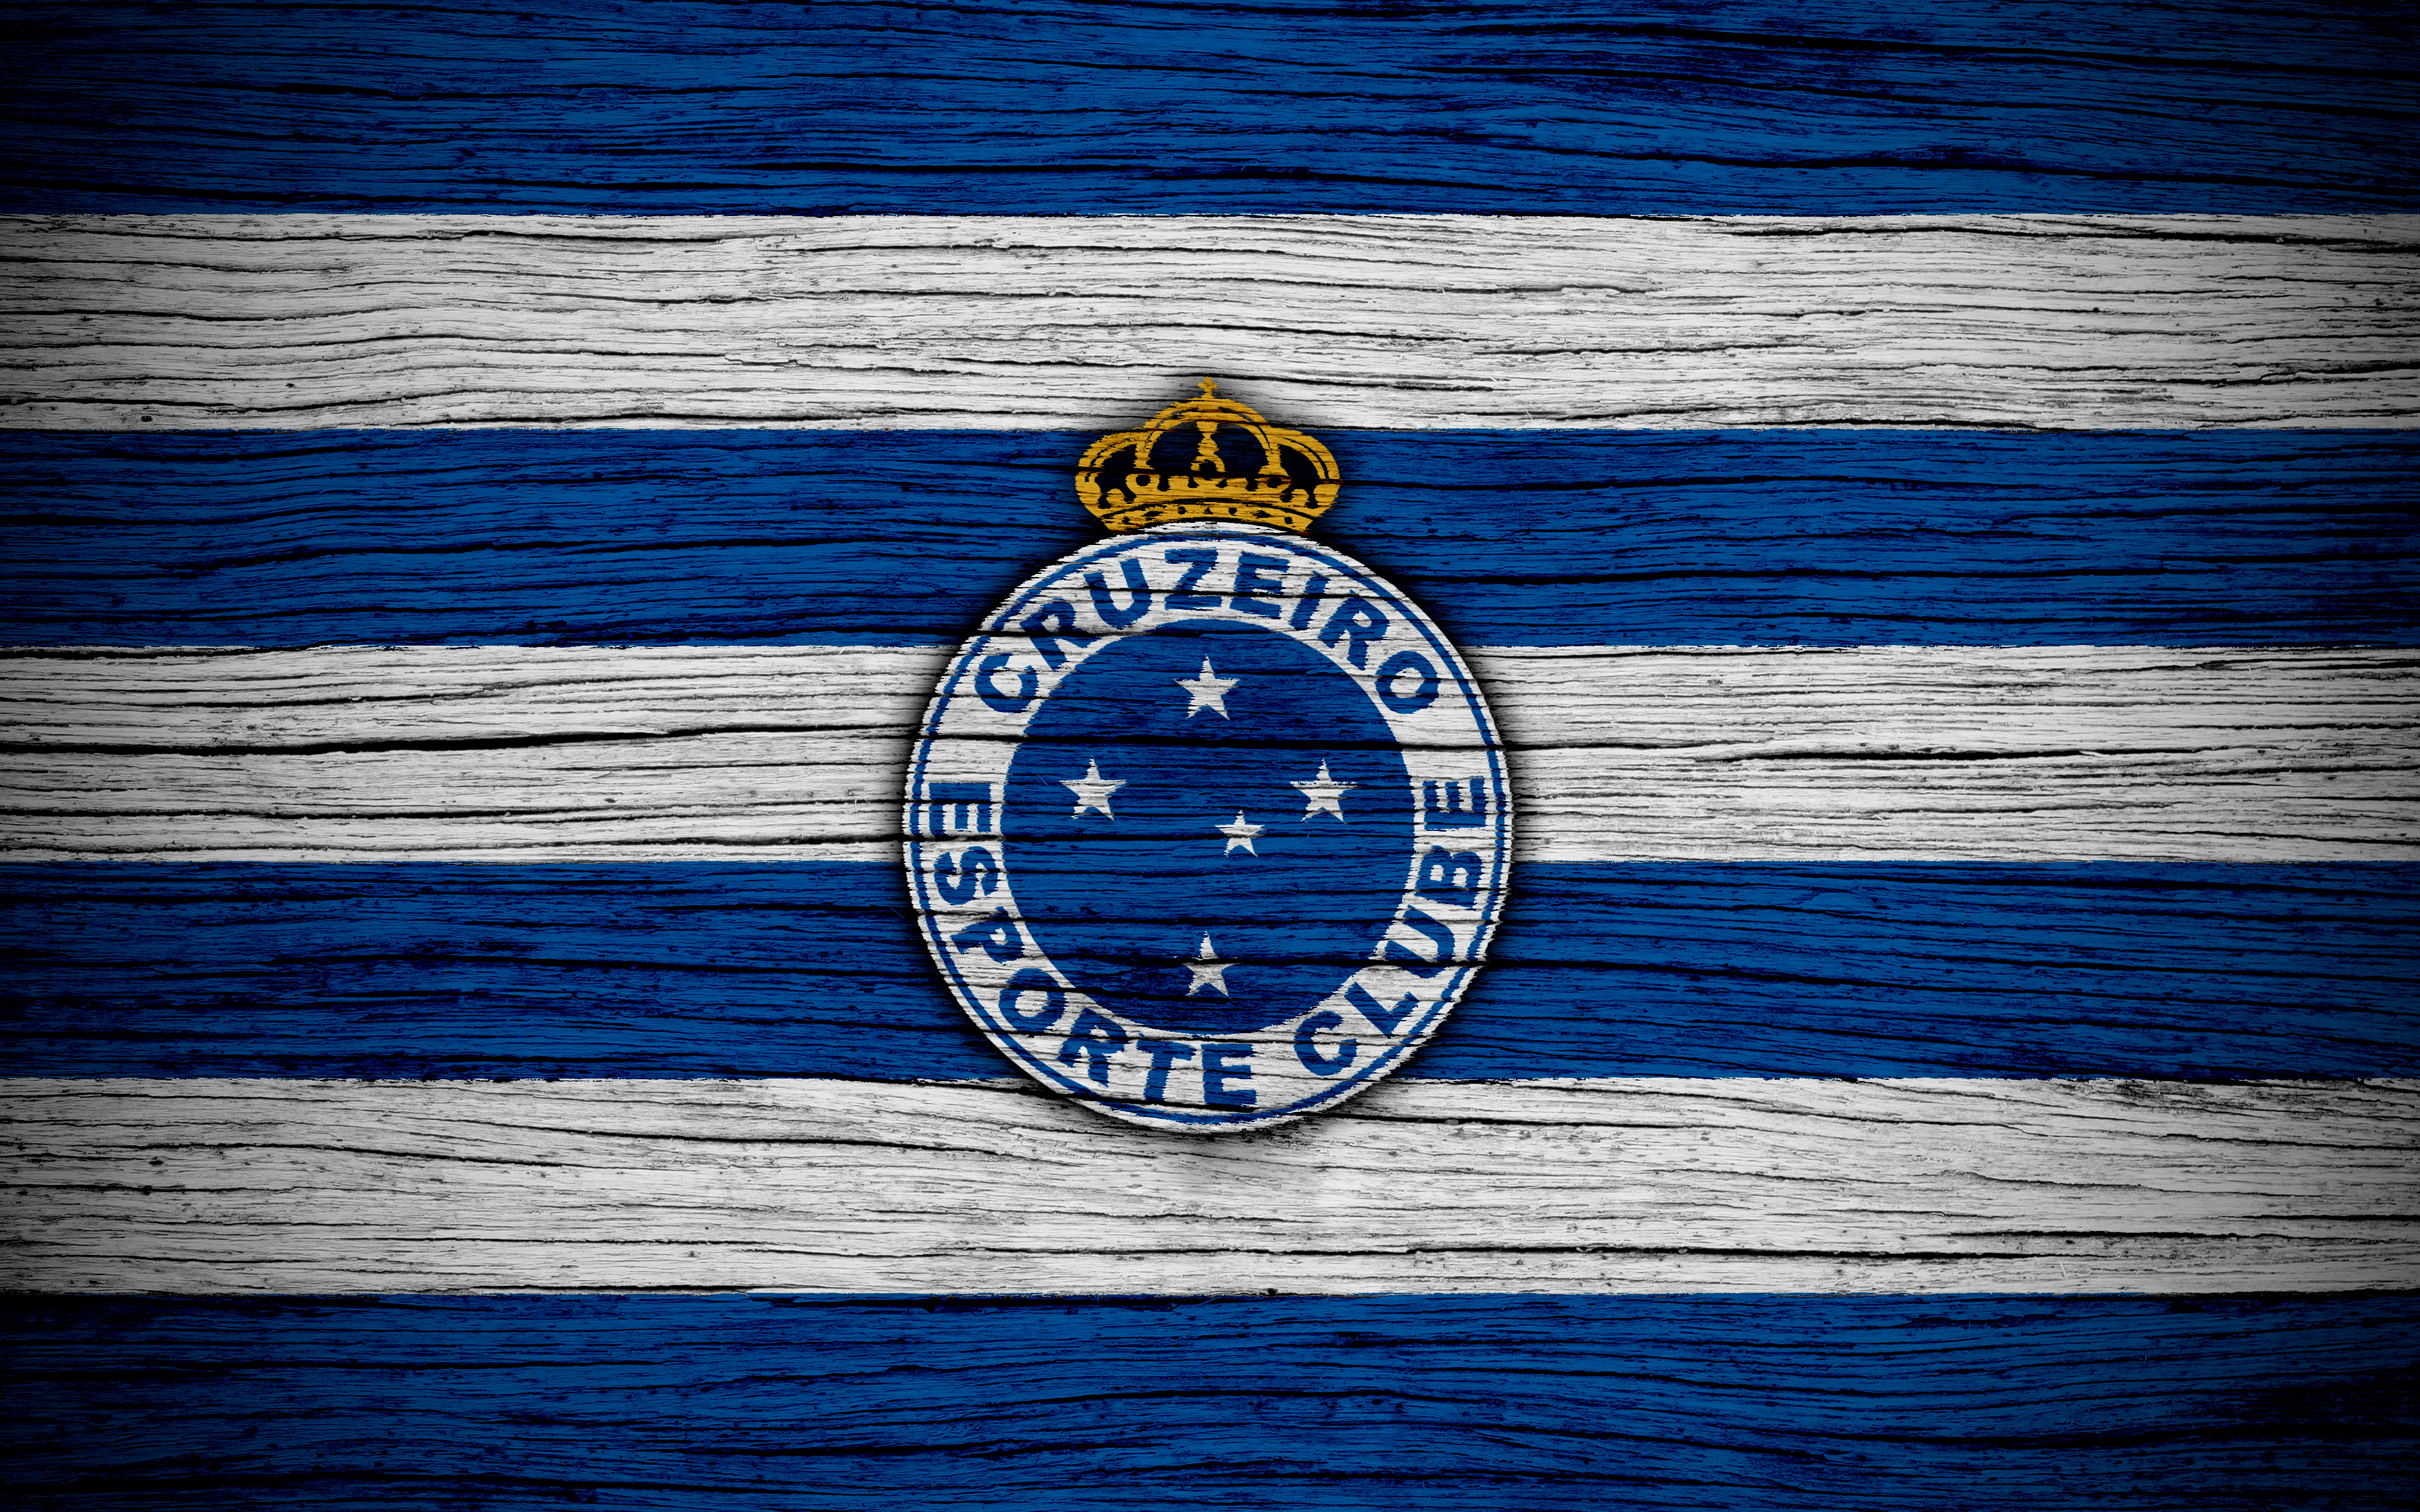 Die besten Cruzeiro Esporte Clube-Hintergründe für den Telefonbildschirm